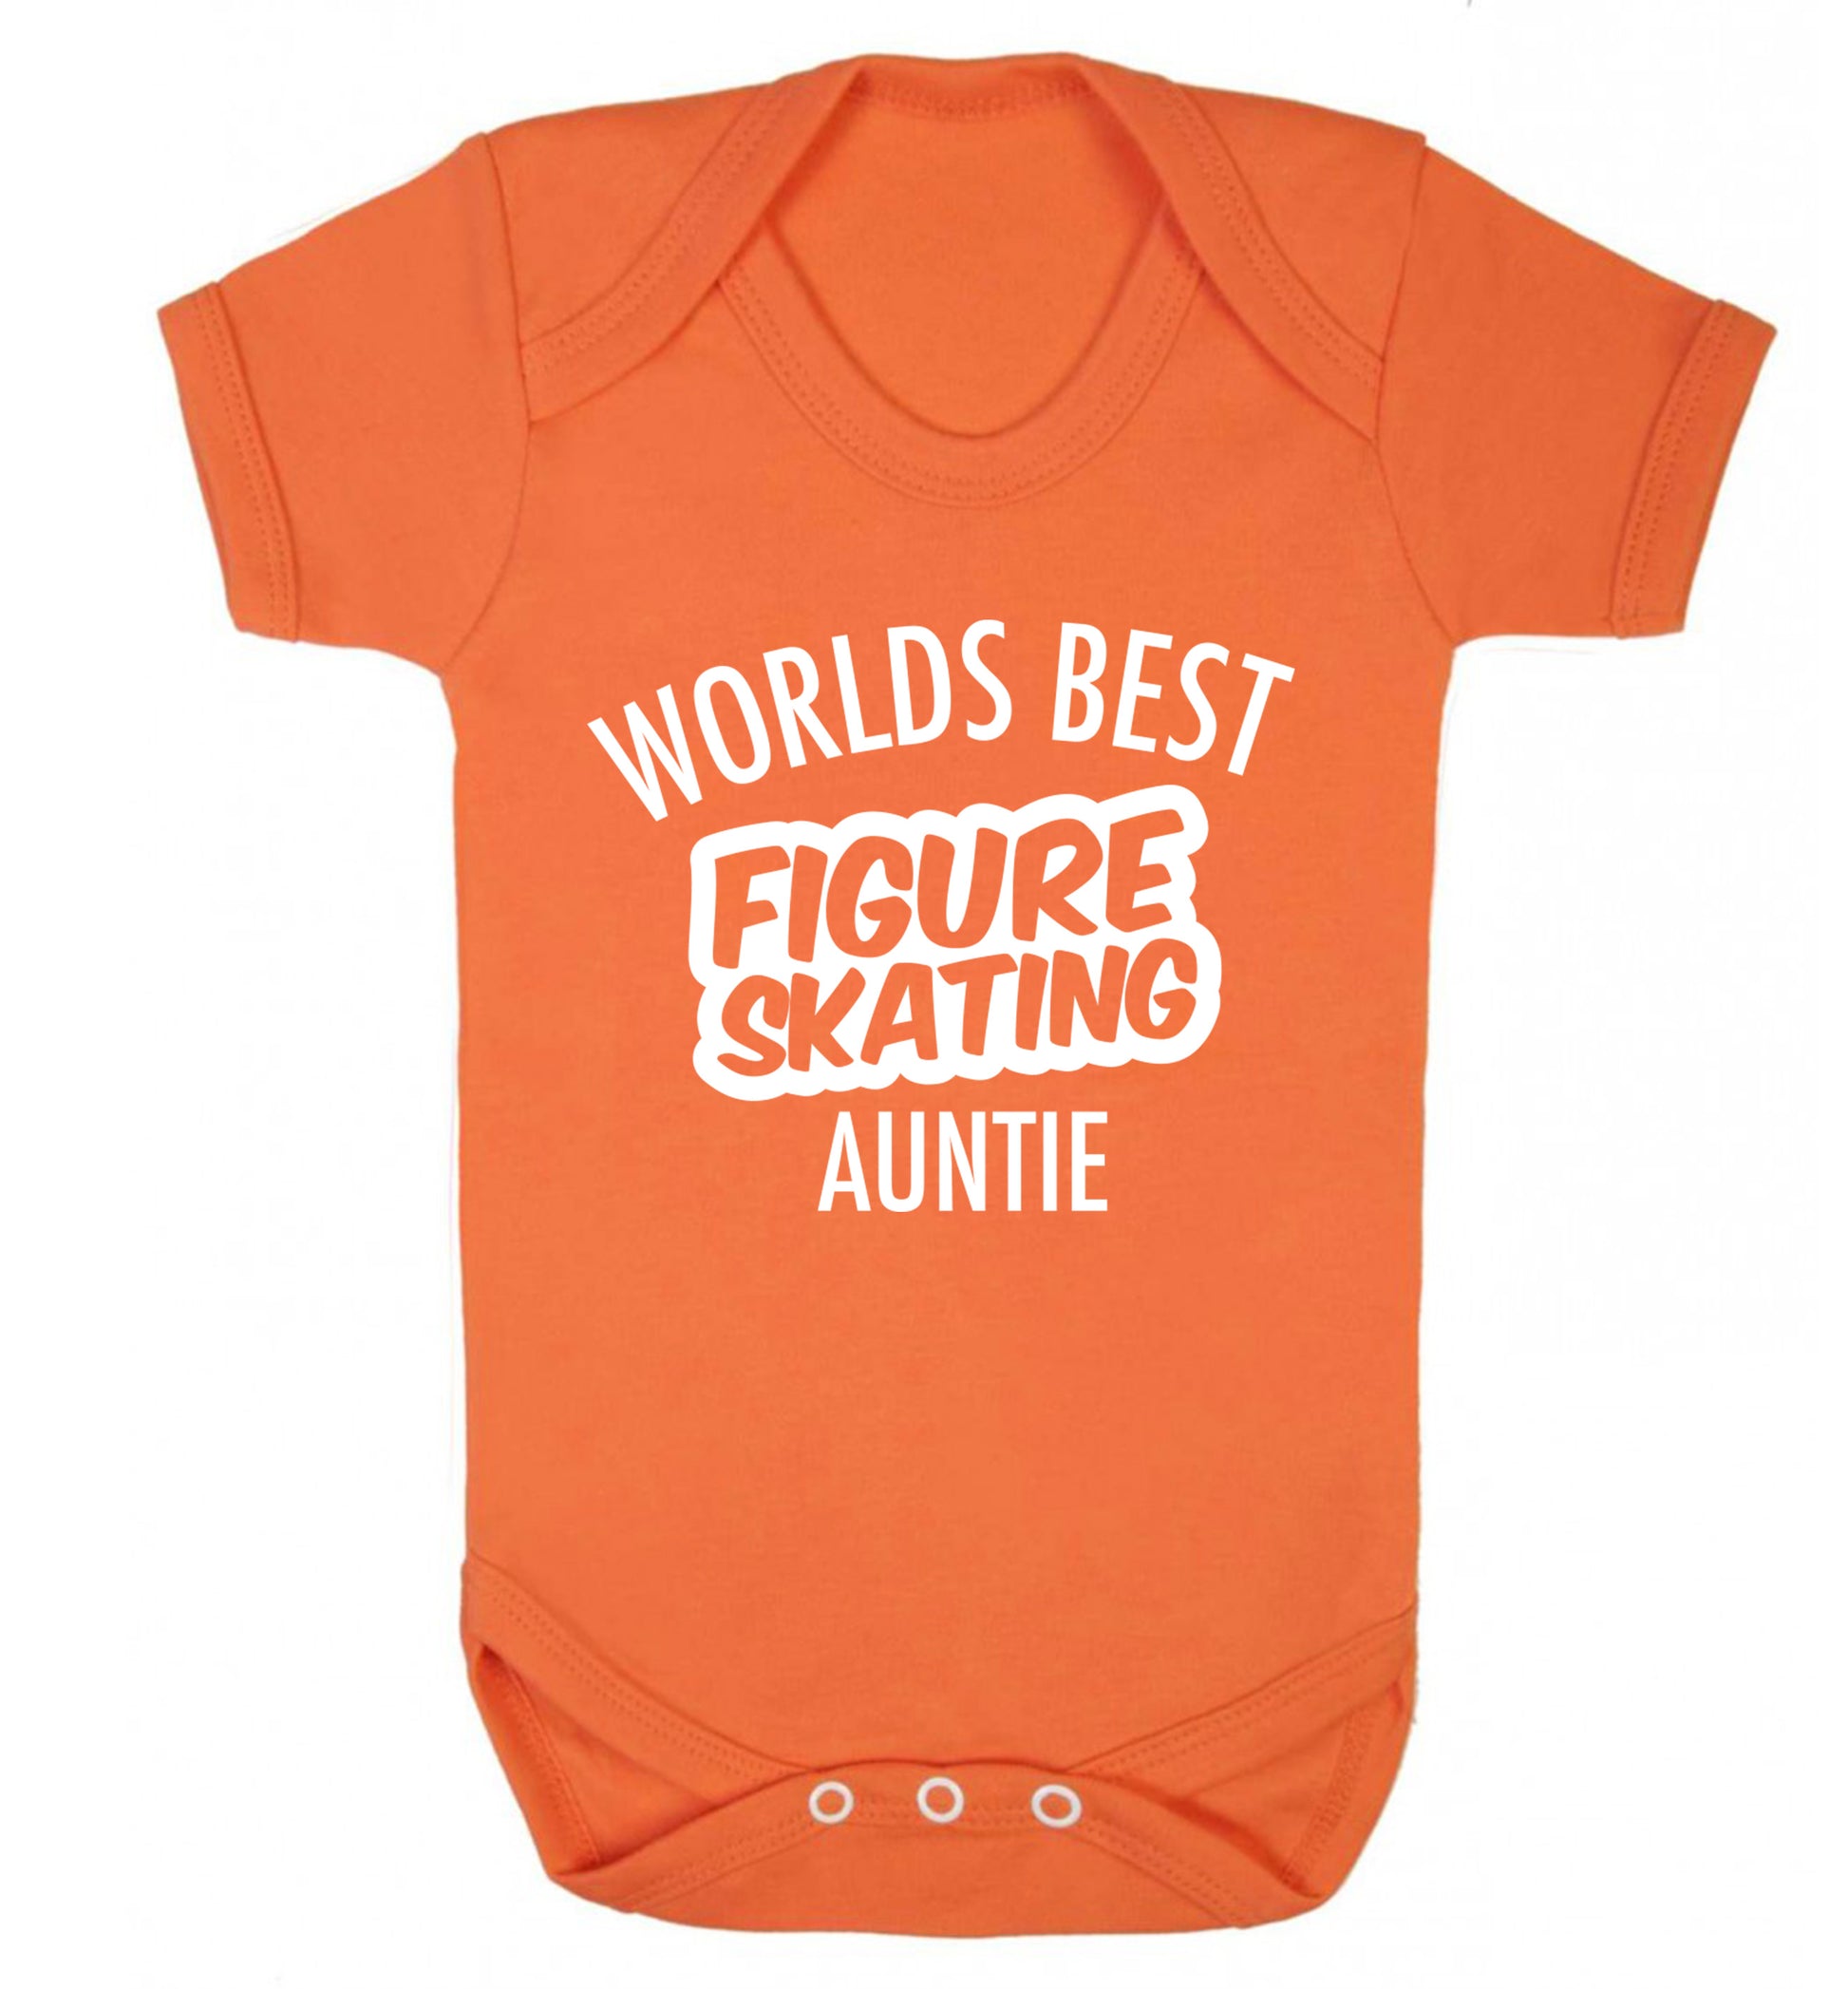 Worlds best figure skating auntie Baby Vest orange 18-24 months